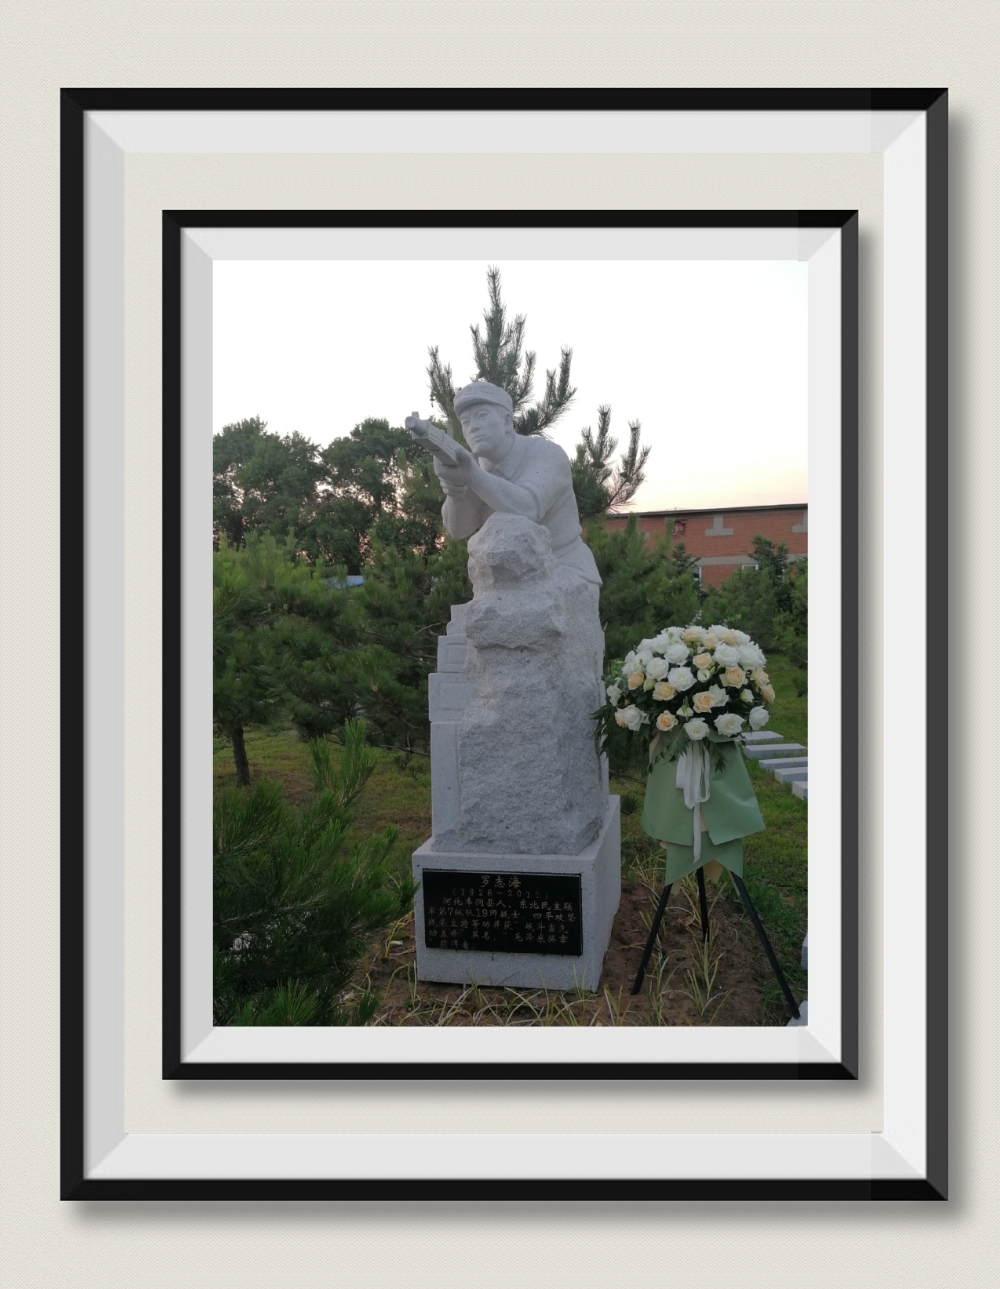 坐落於四平烈士陵園的羅志海雕像